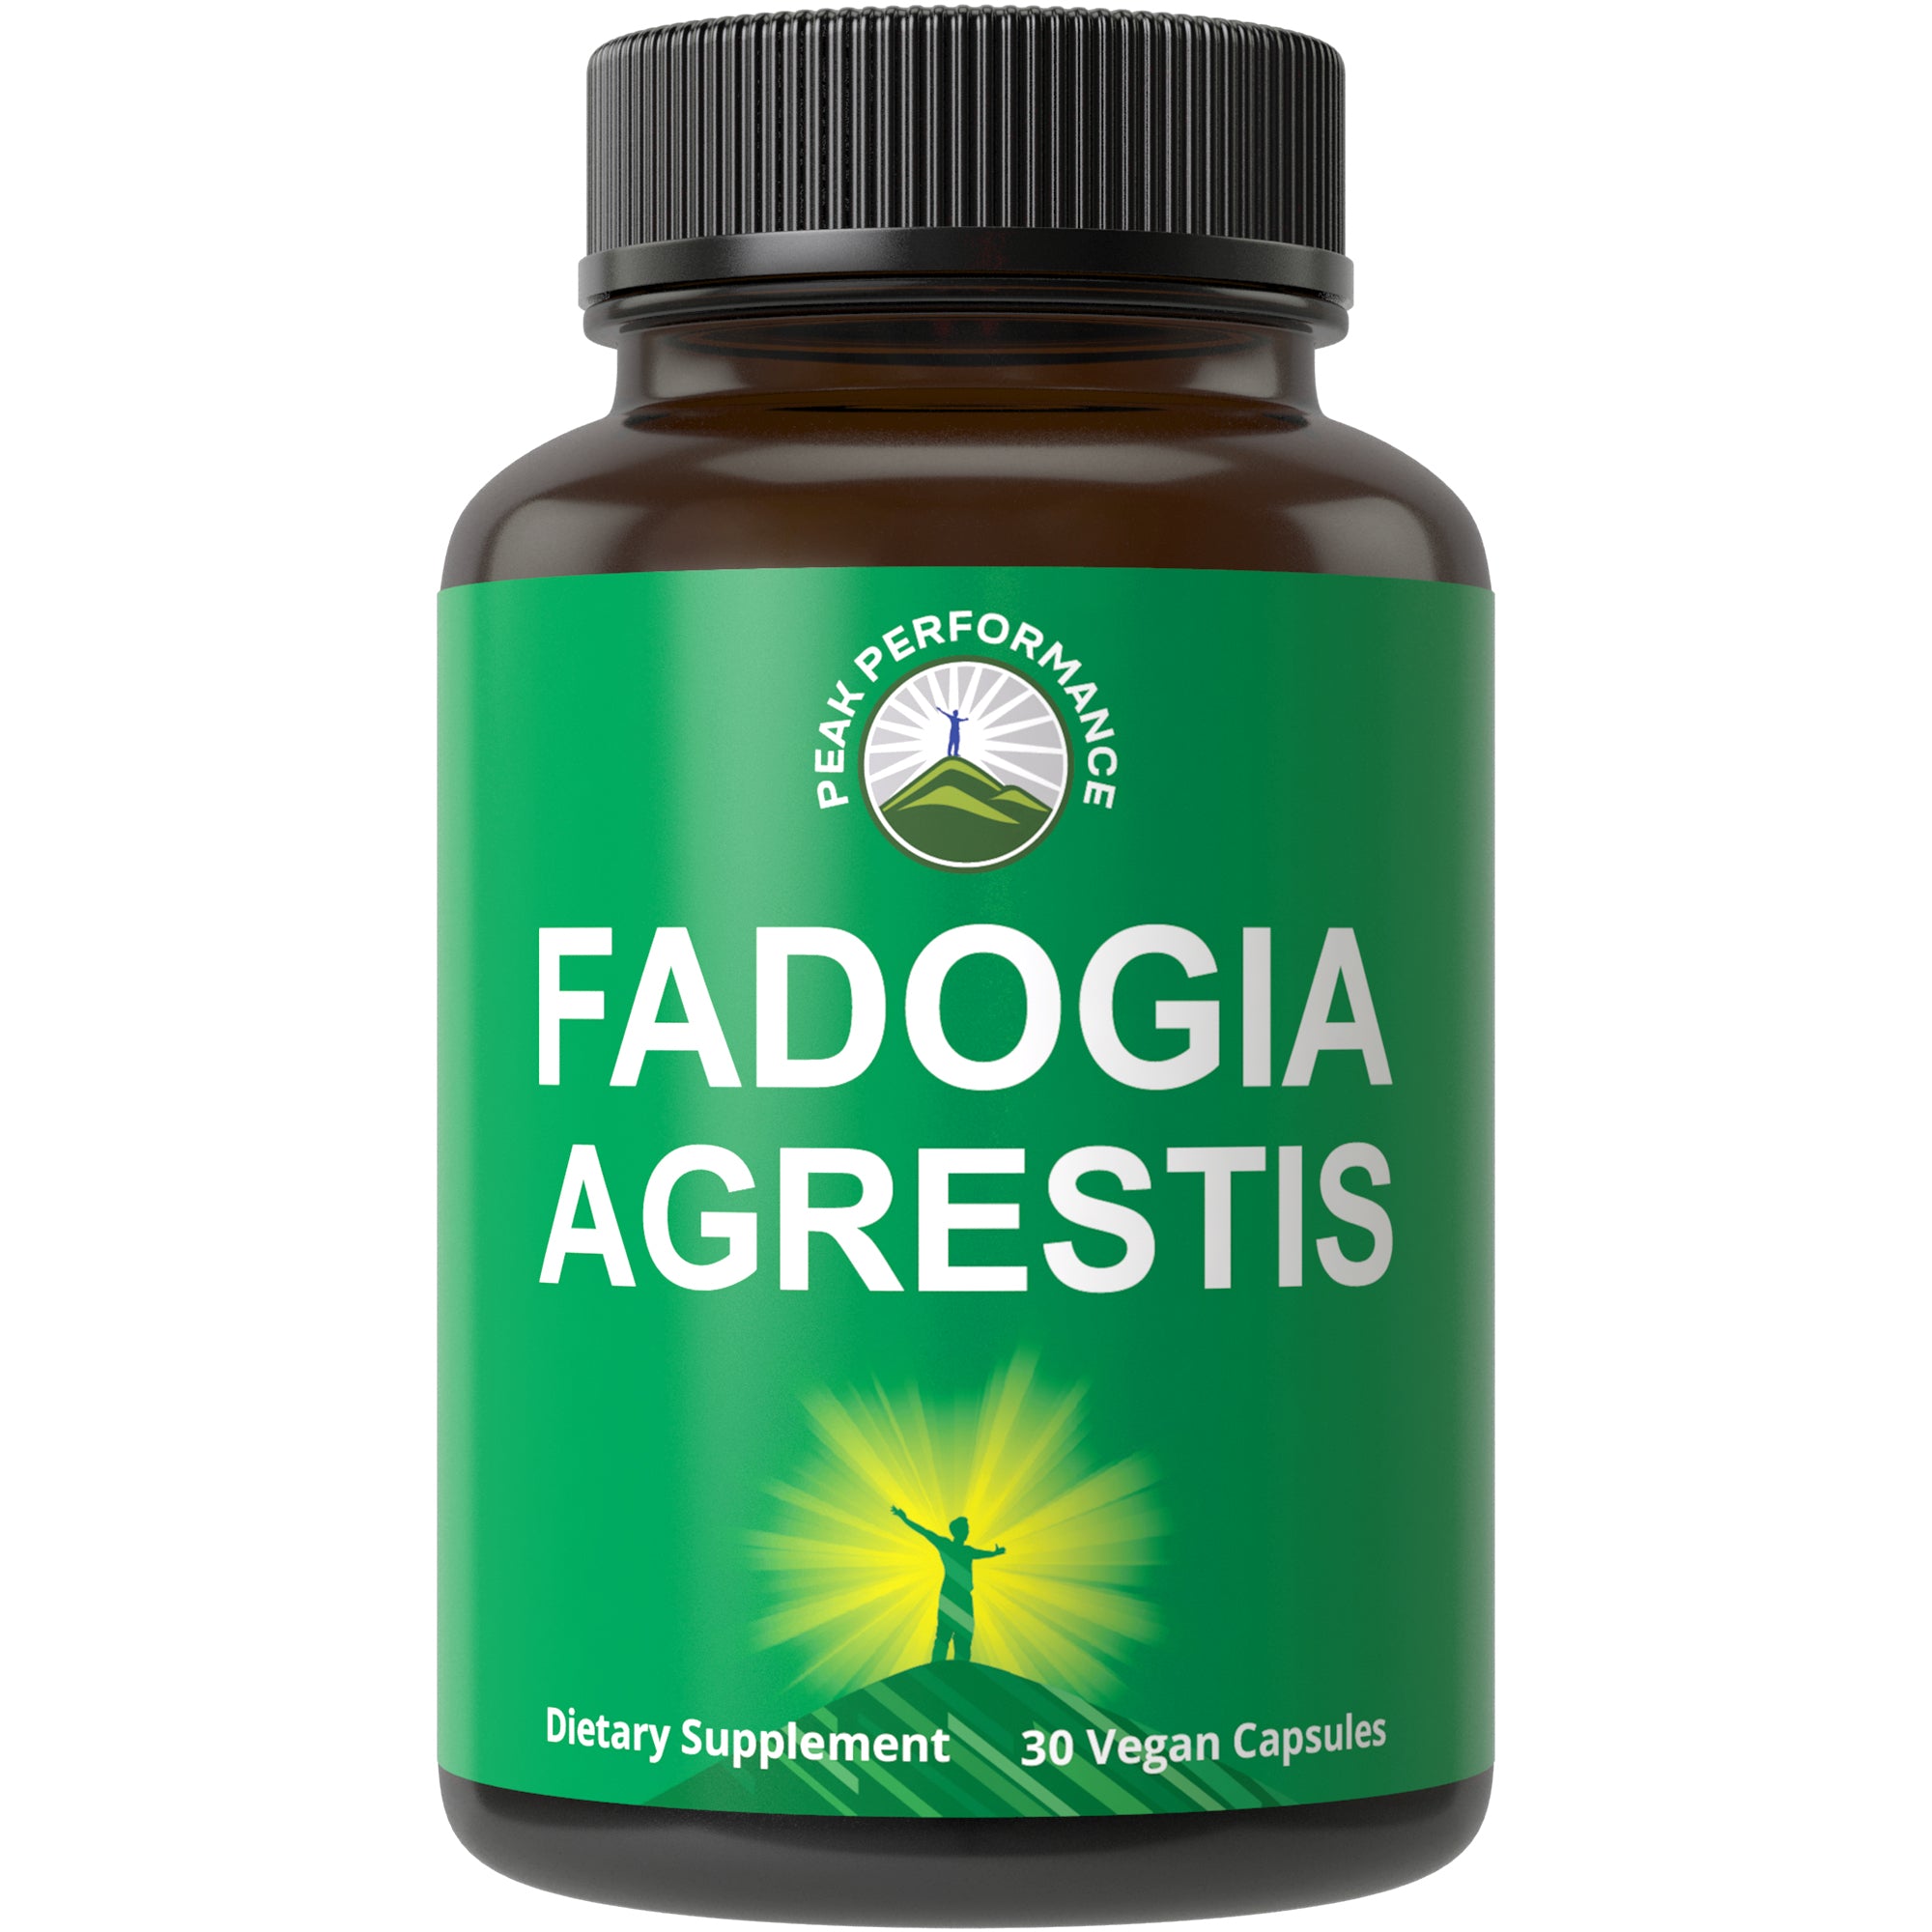 Fadogia Agrestis Capsules